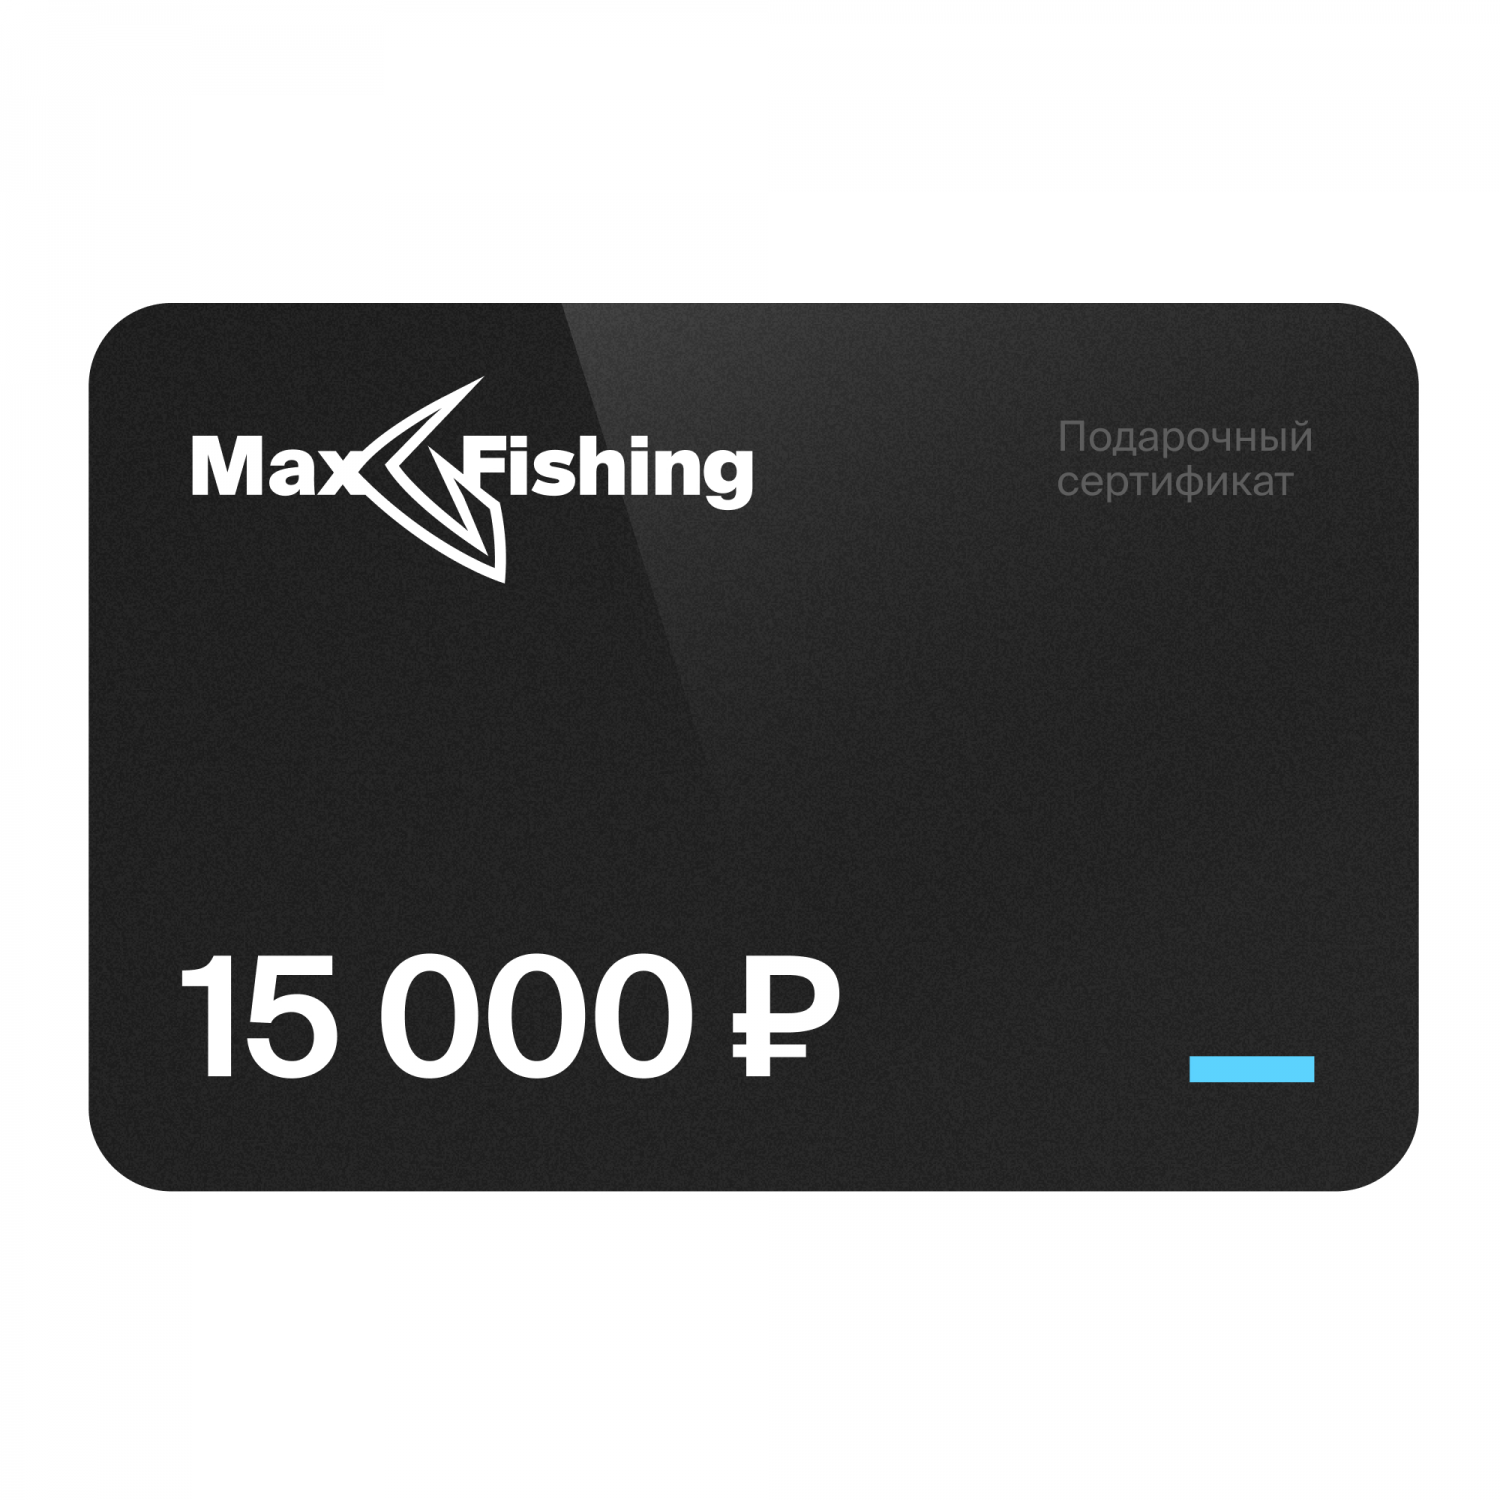 Подарочный сертификат MaxFishing 15 000 ₽ подарочный сертификат на 10 000 рублей